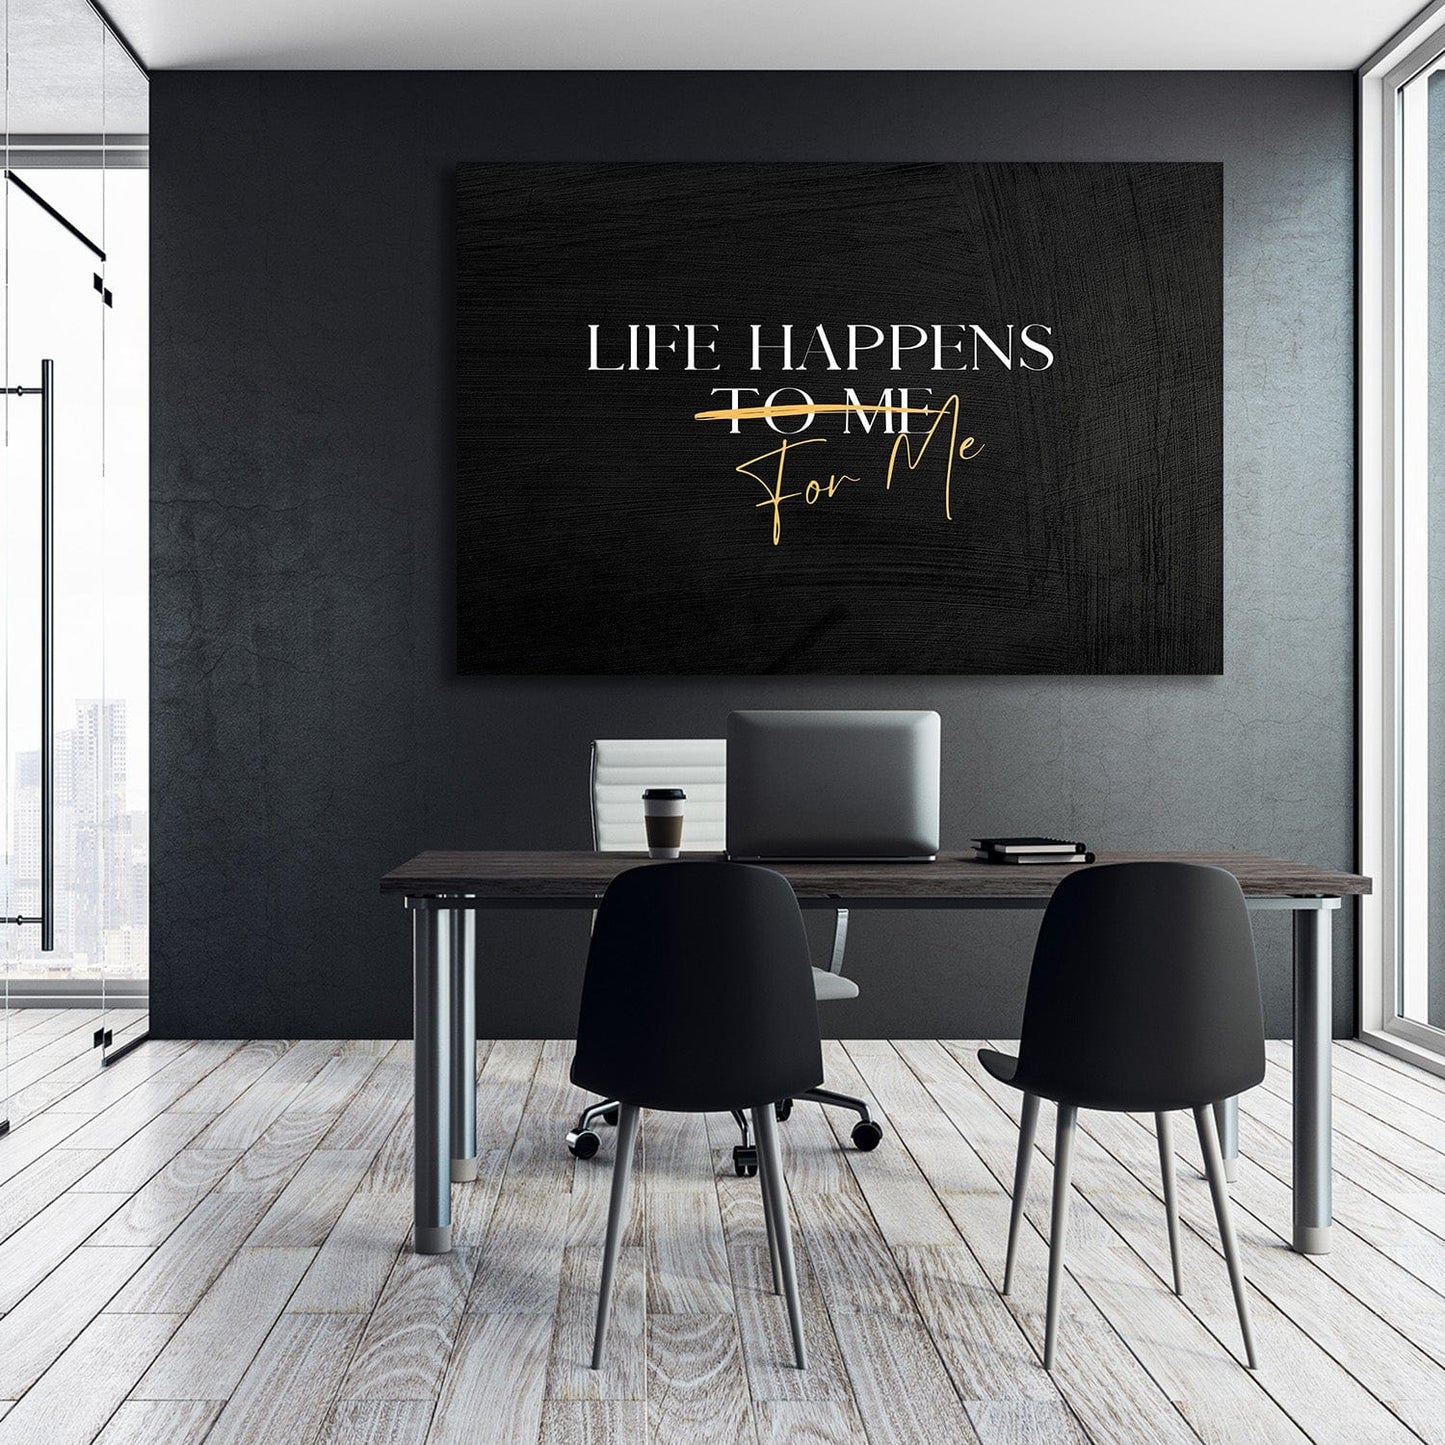 Life Happens FOR Me Quote Wall Art | Inspirational Wall Art Motivational Wall Art Quotes Office Art | ImpaktMaker Exclusive Canvas Art Landscape